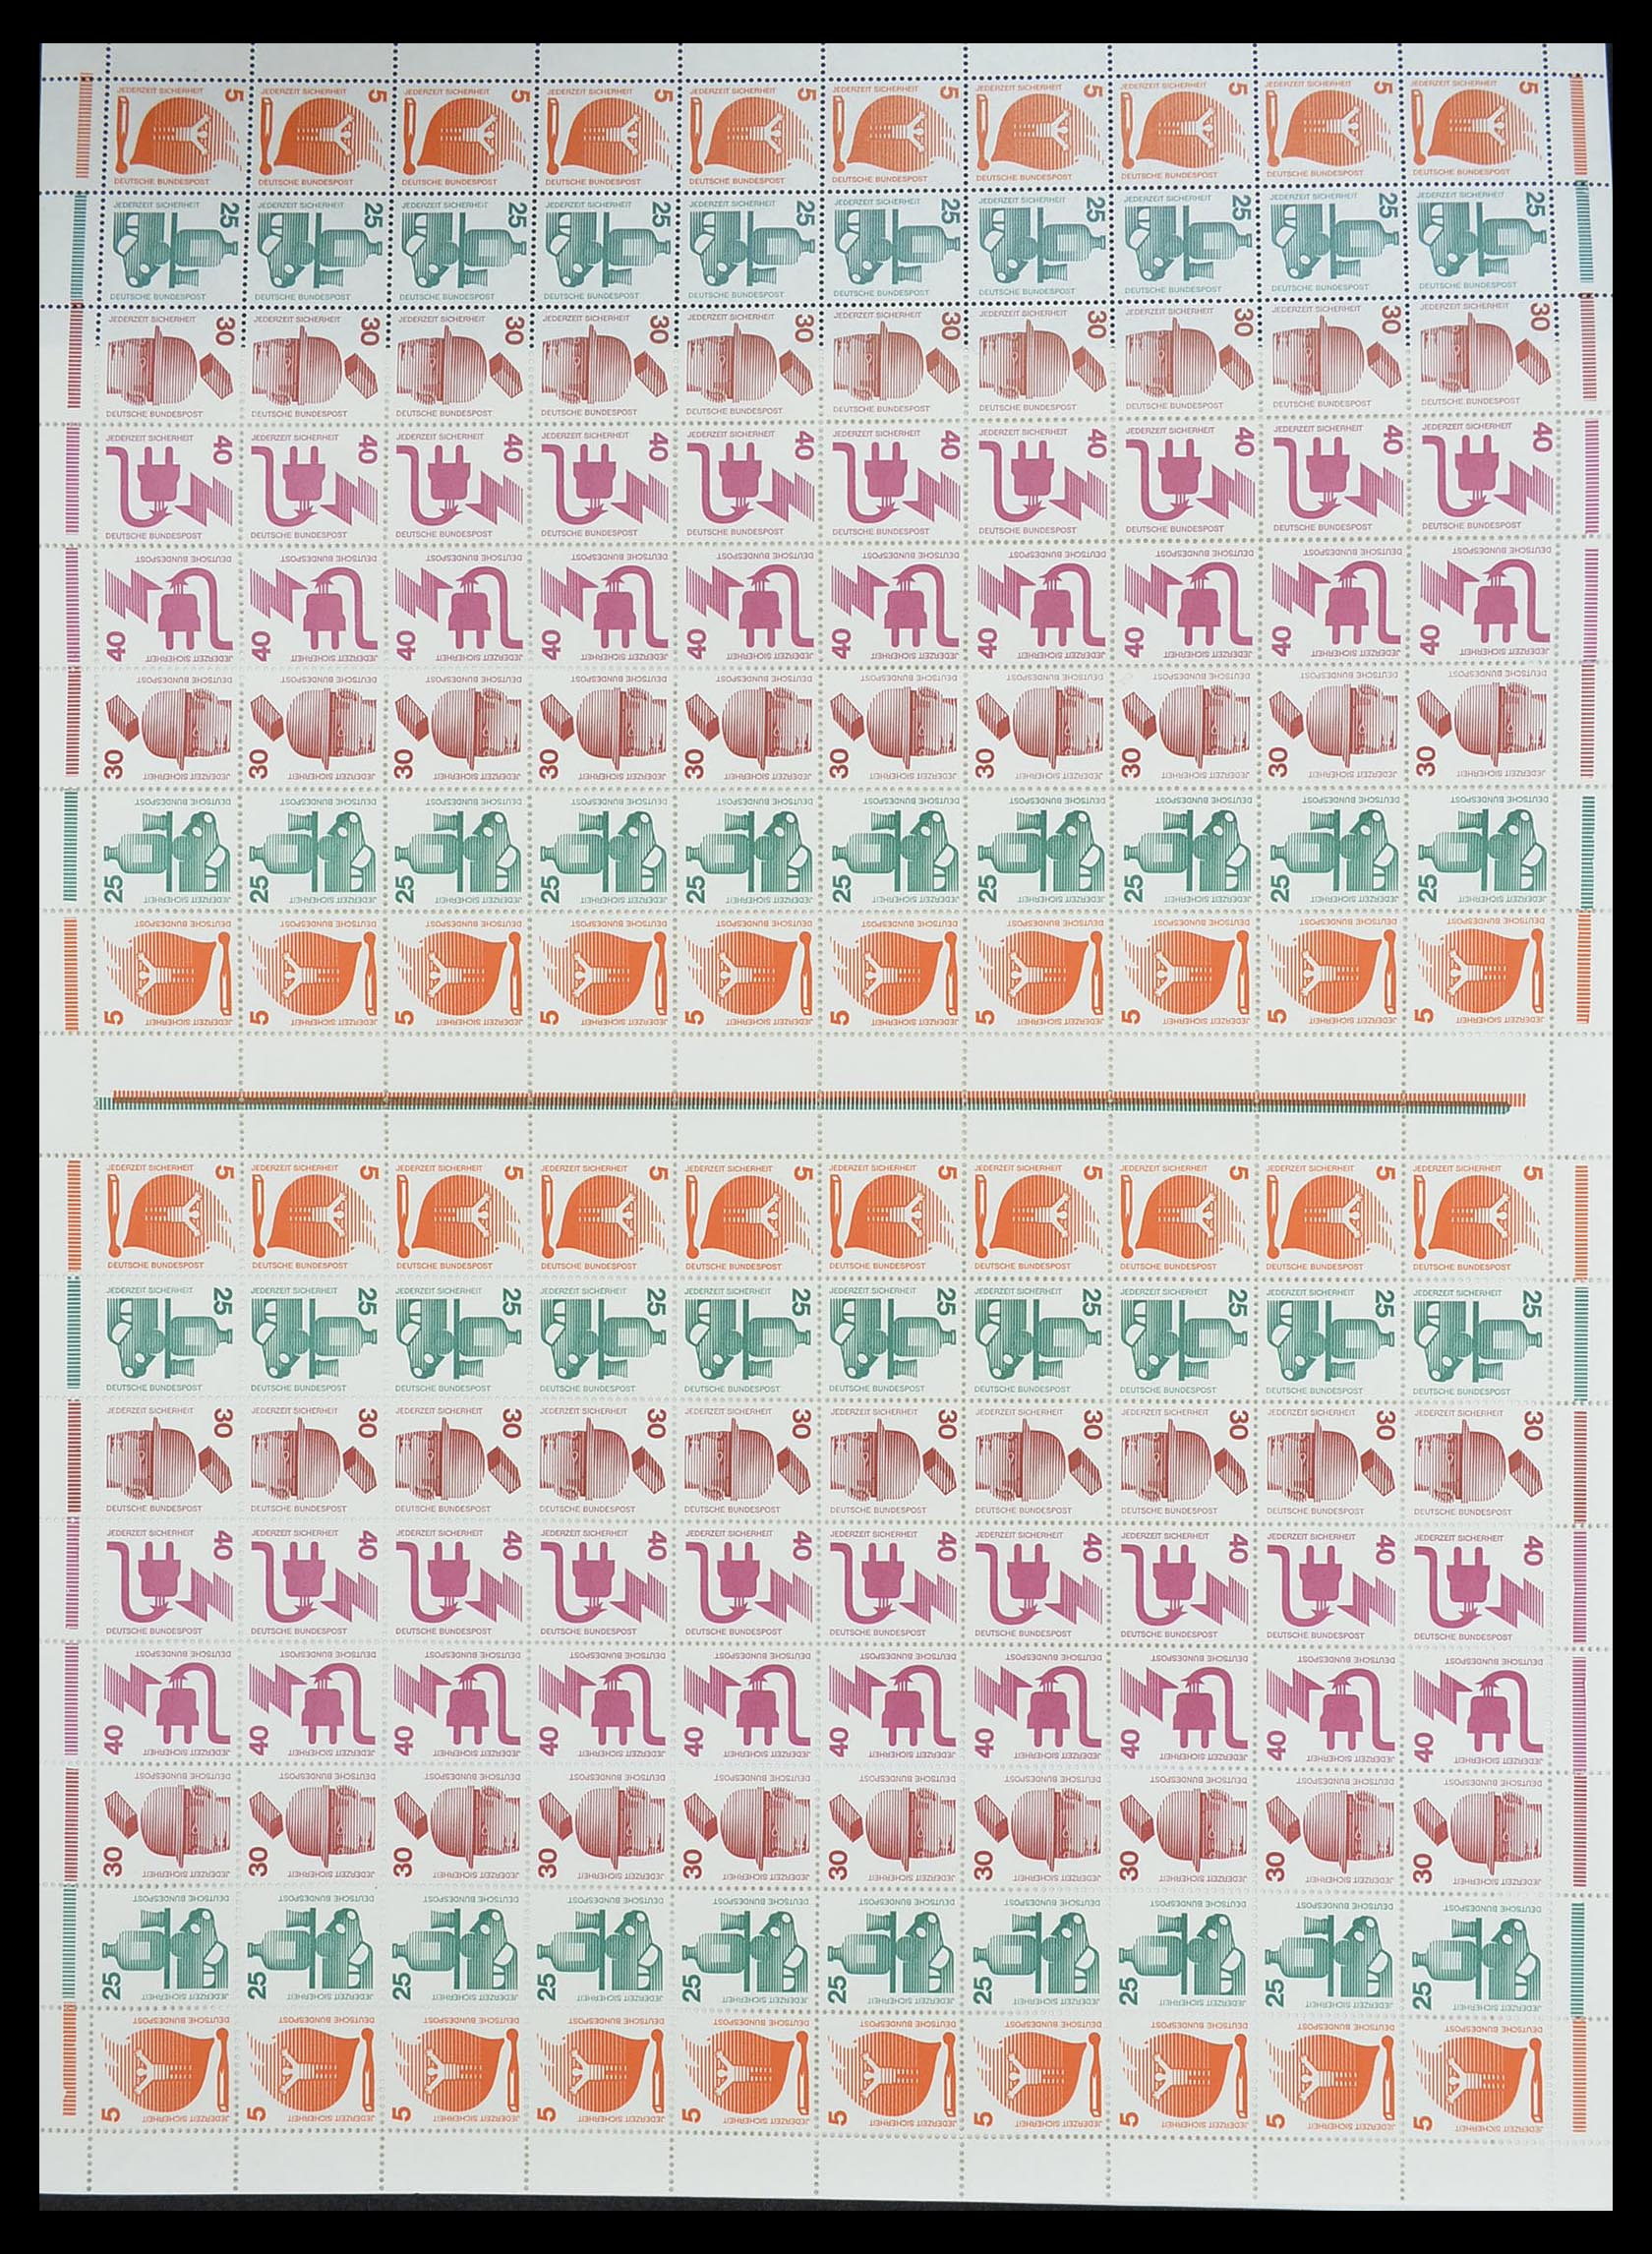 33753 002 - Postzegelverzameling 33753 Bund en Berlijn markenheftchenbogen 1966-1